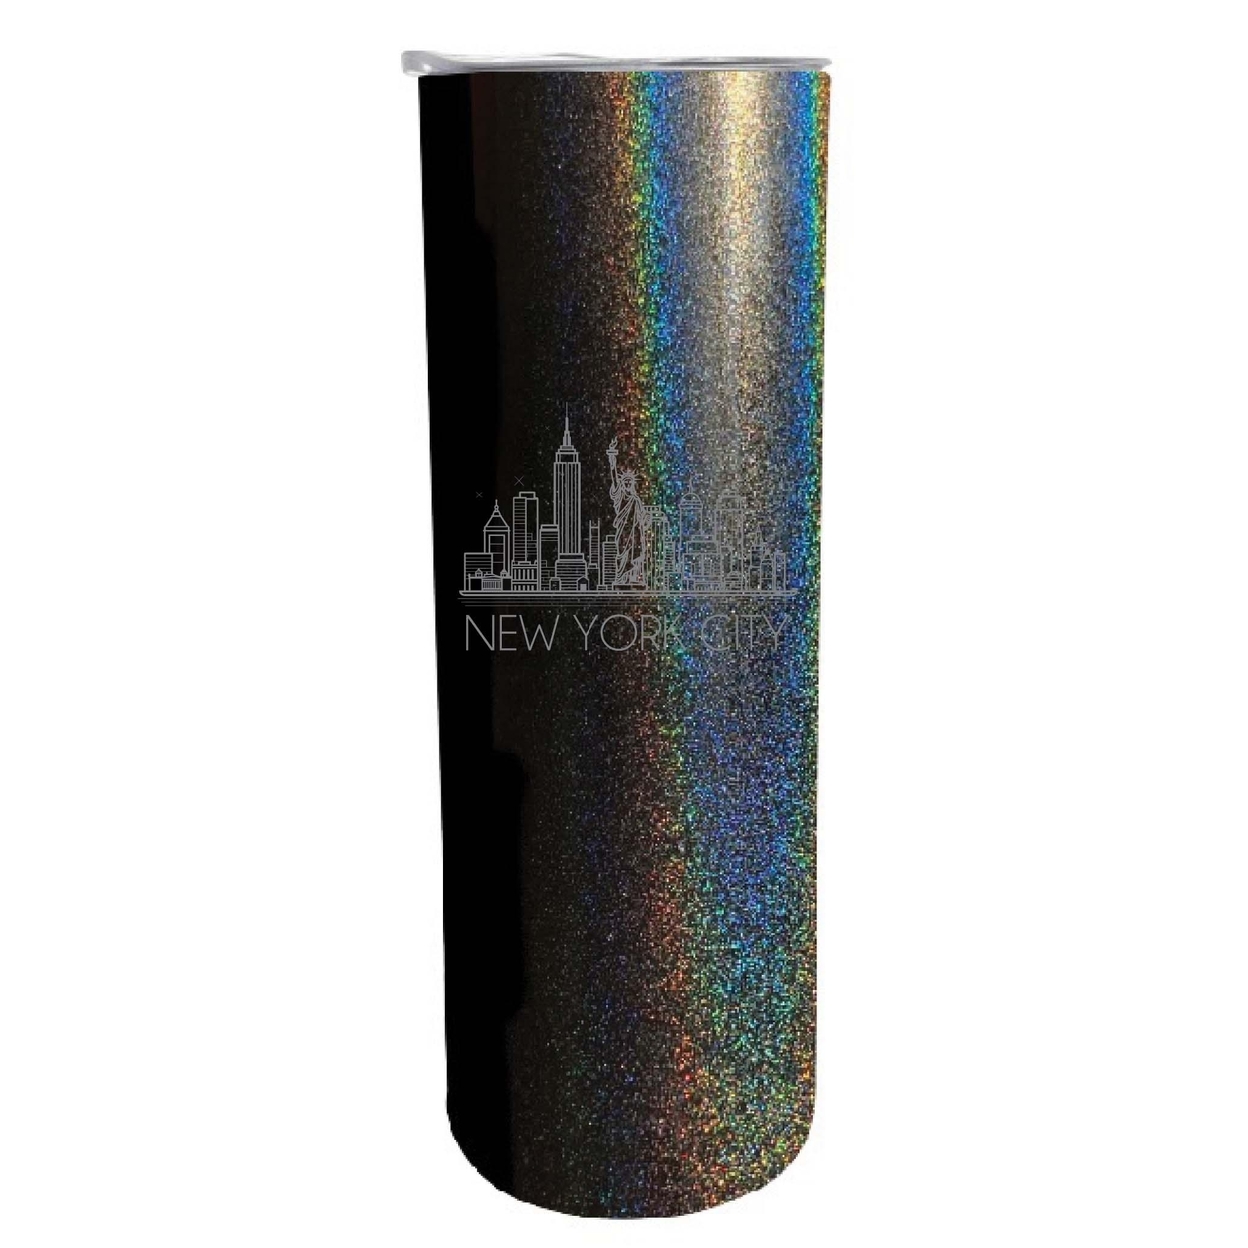 New York City Souvenir 20 Oz Engraved Insulated Skinny Tumbler Glitter - Black Glitter,,4-Pack